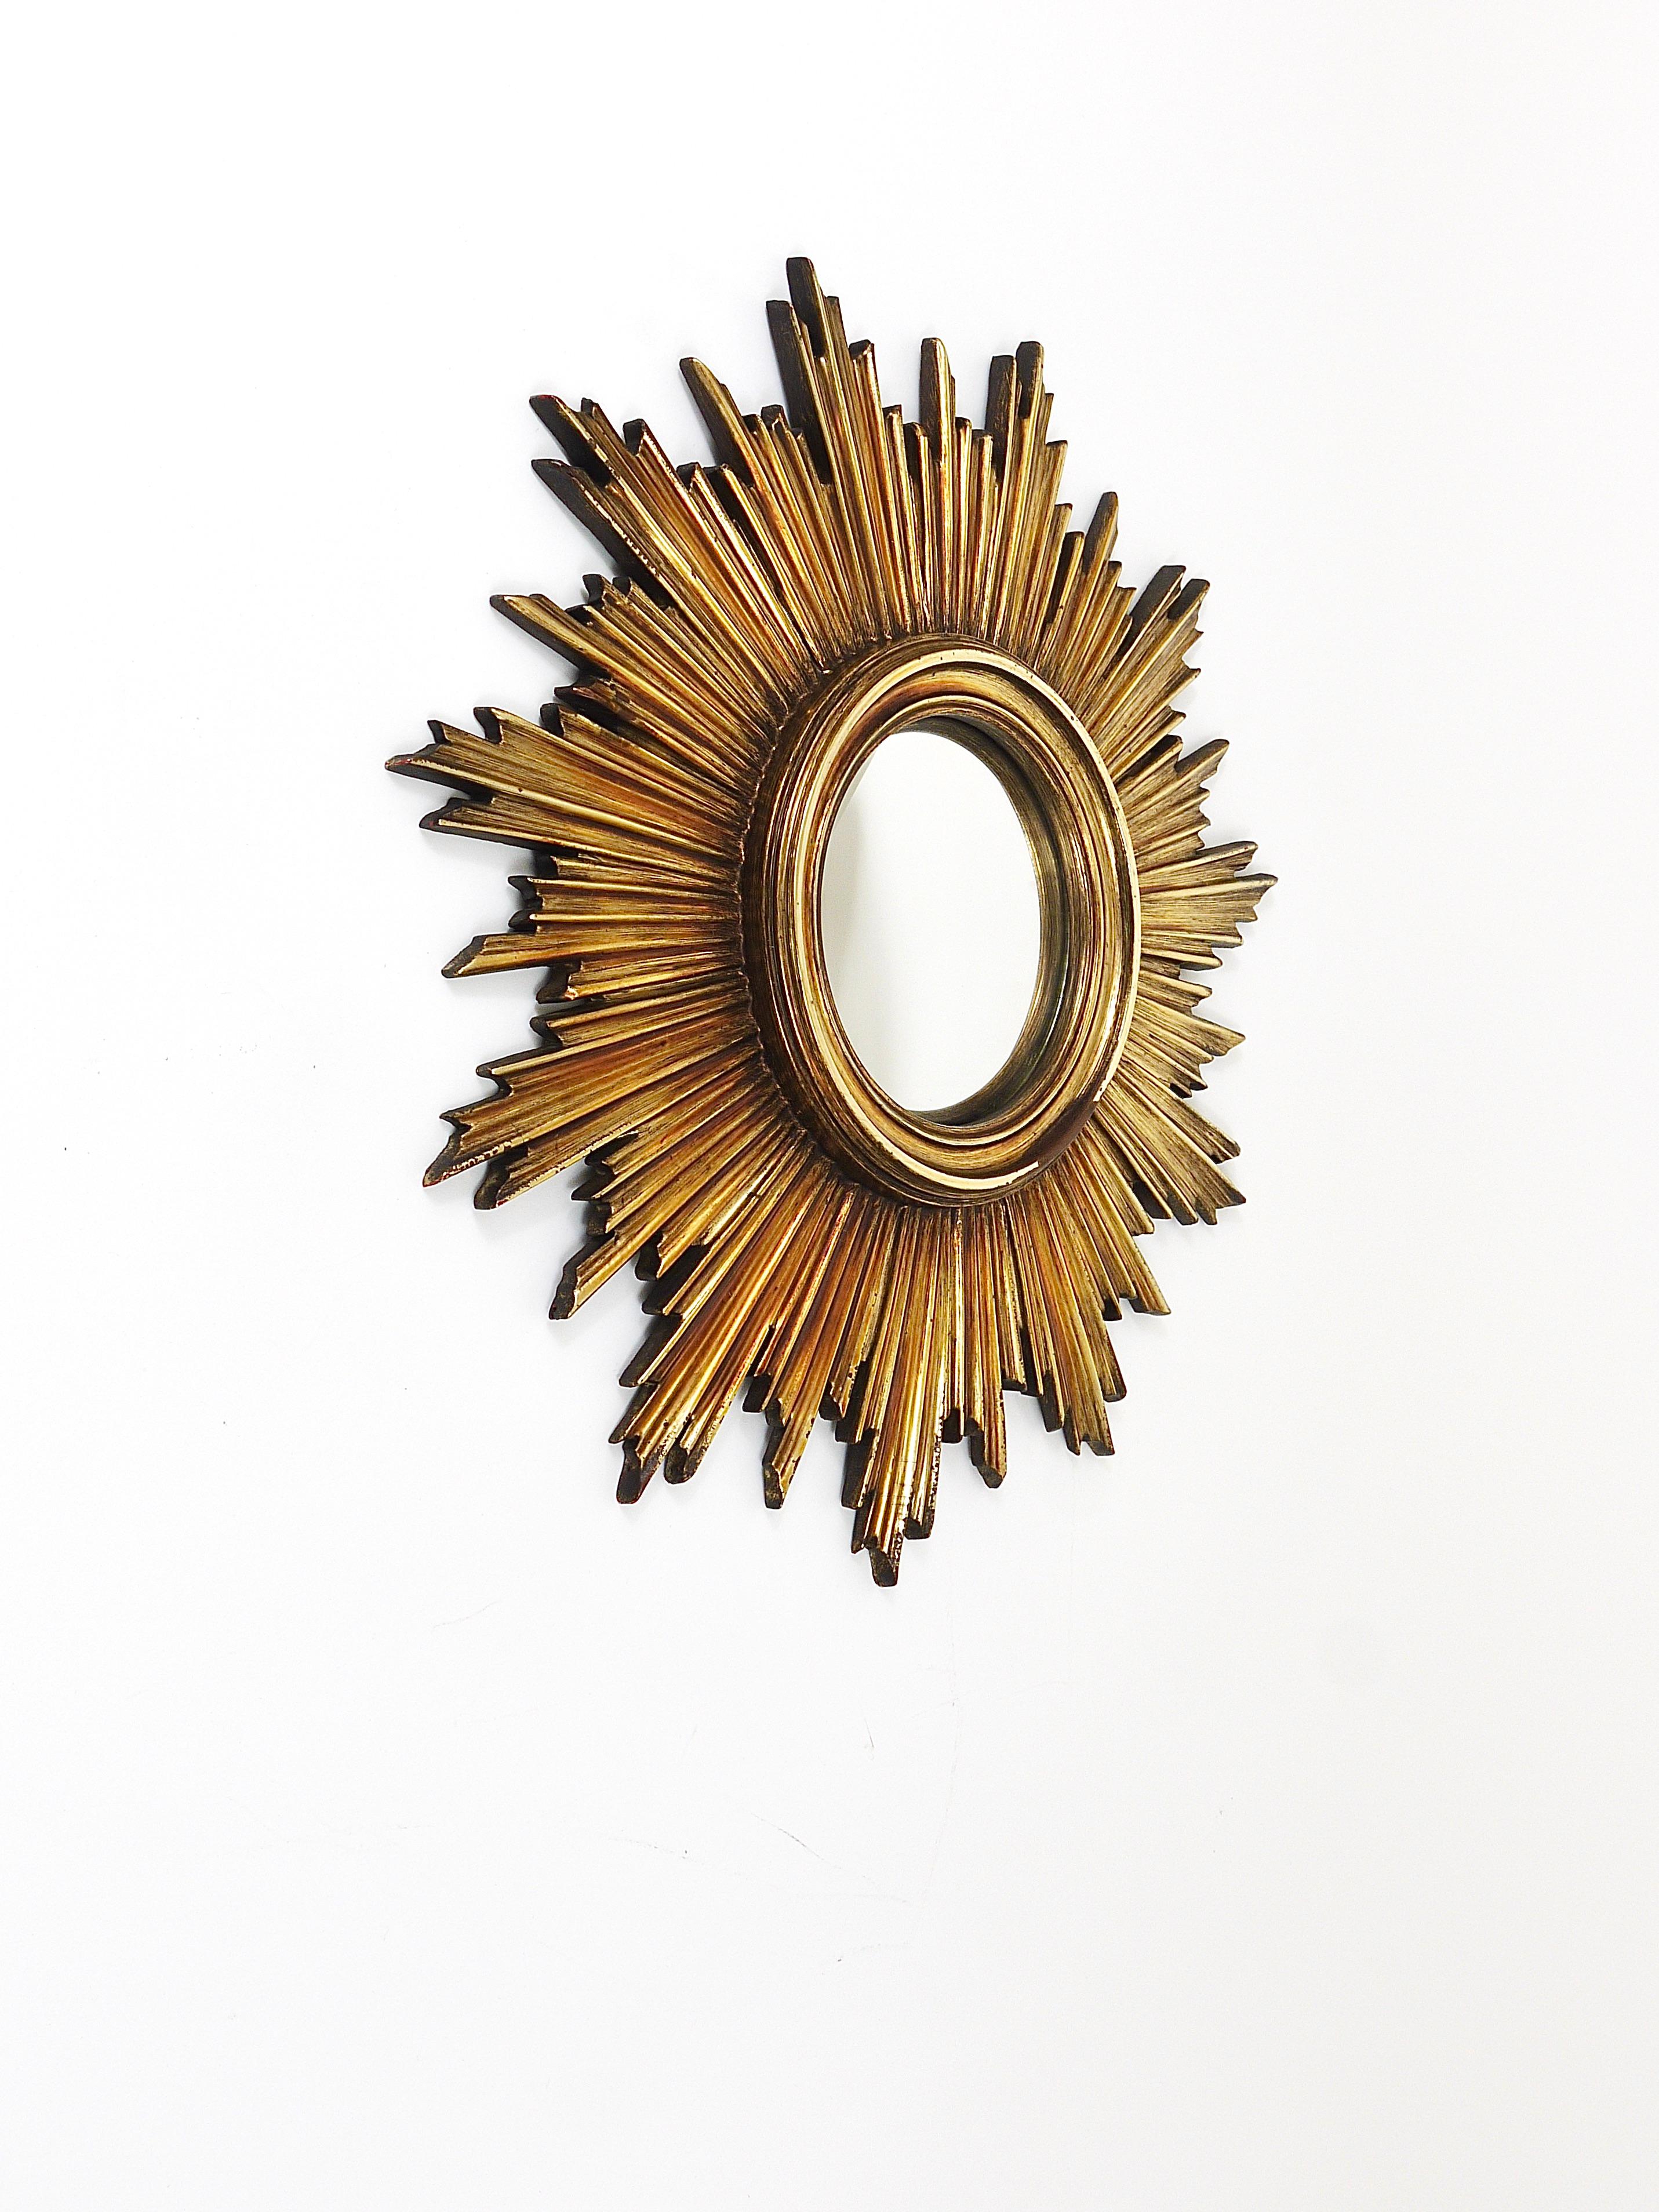 Un très beau et très décoratif miroir doré à rayons de soleil en étoile du milieu du siècle dernier. Fabriqué en France dans les années 1960. Fabriqué en résine, avec le miroir convexe d'origine. En bon état. Diamètre total 18